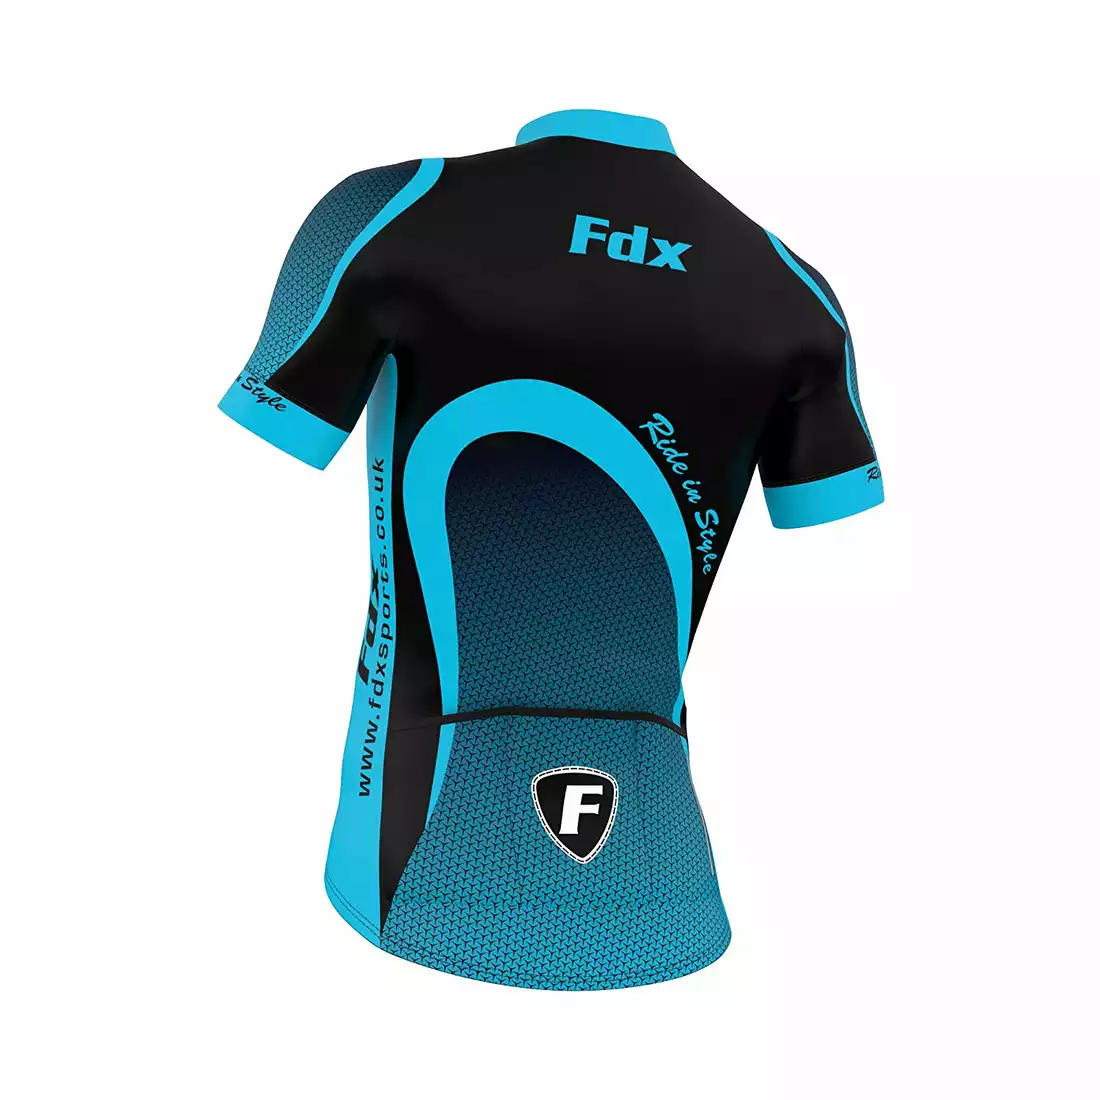 FDX 1010 letni zestaw rowerowy koszulka + spodenki na szelce czarno-niebieski